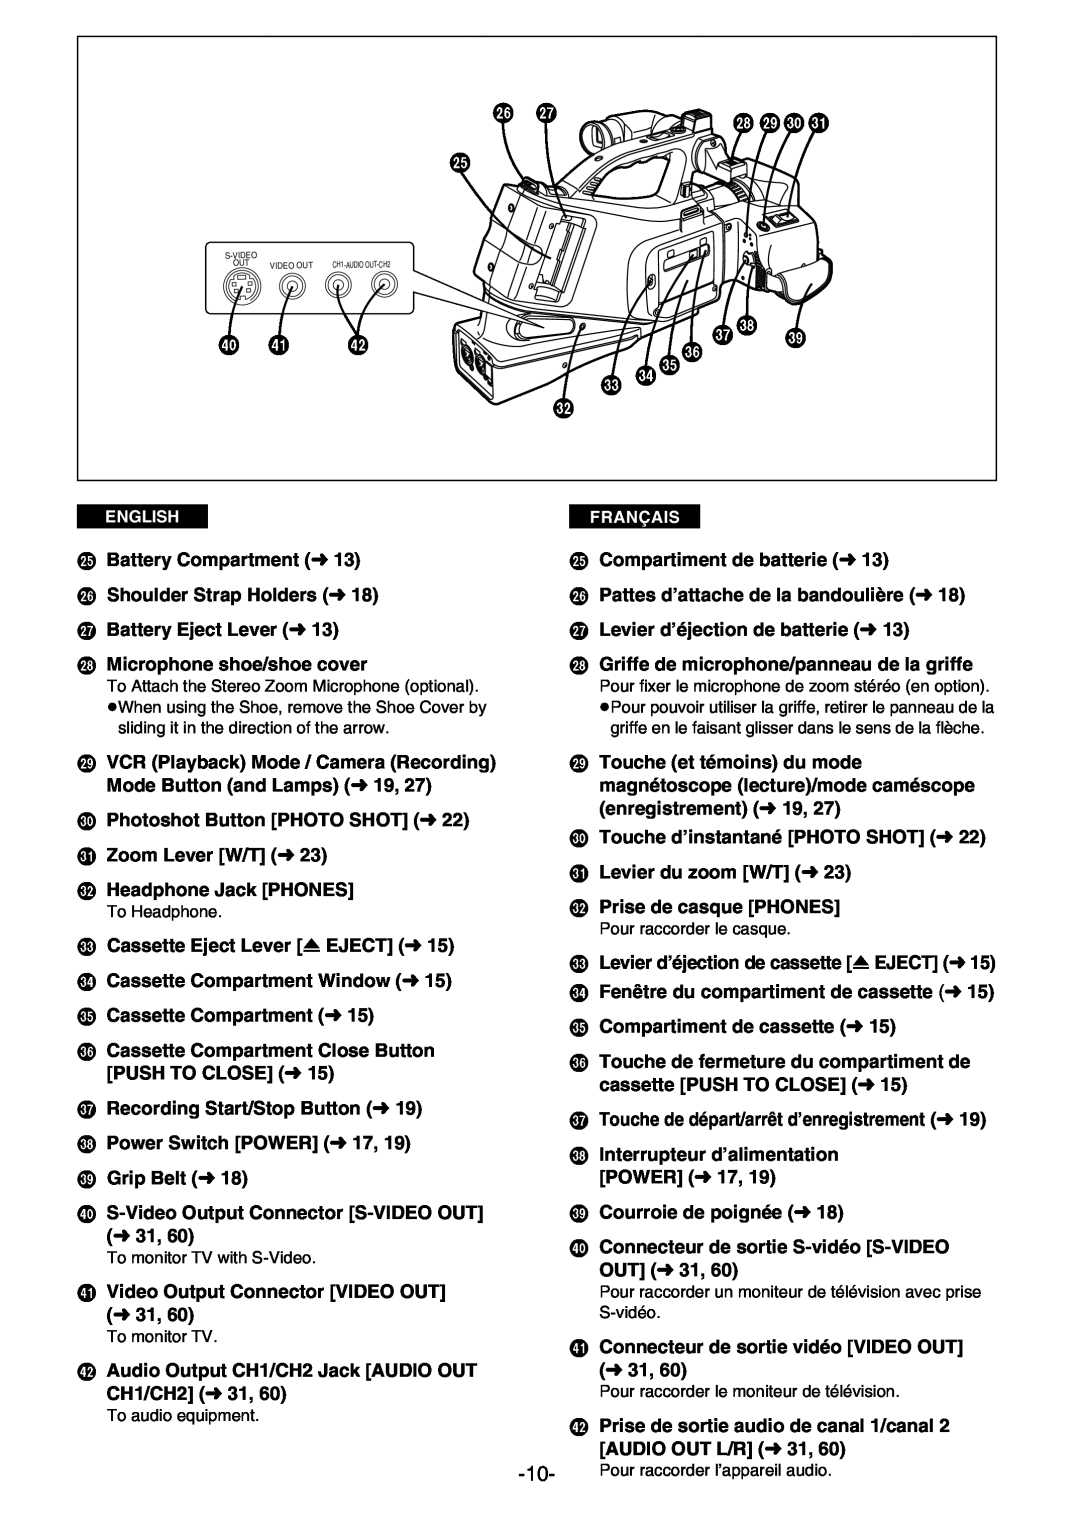 Panasonic AG- DVC 15P manual L Mno, X Y Z T Uv W Q Rs P, Battery Compartment m13, Compartiment de batterie m13 